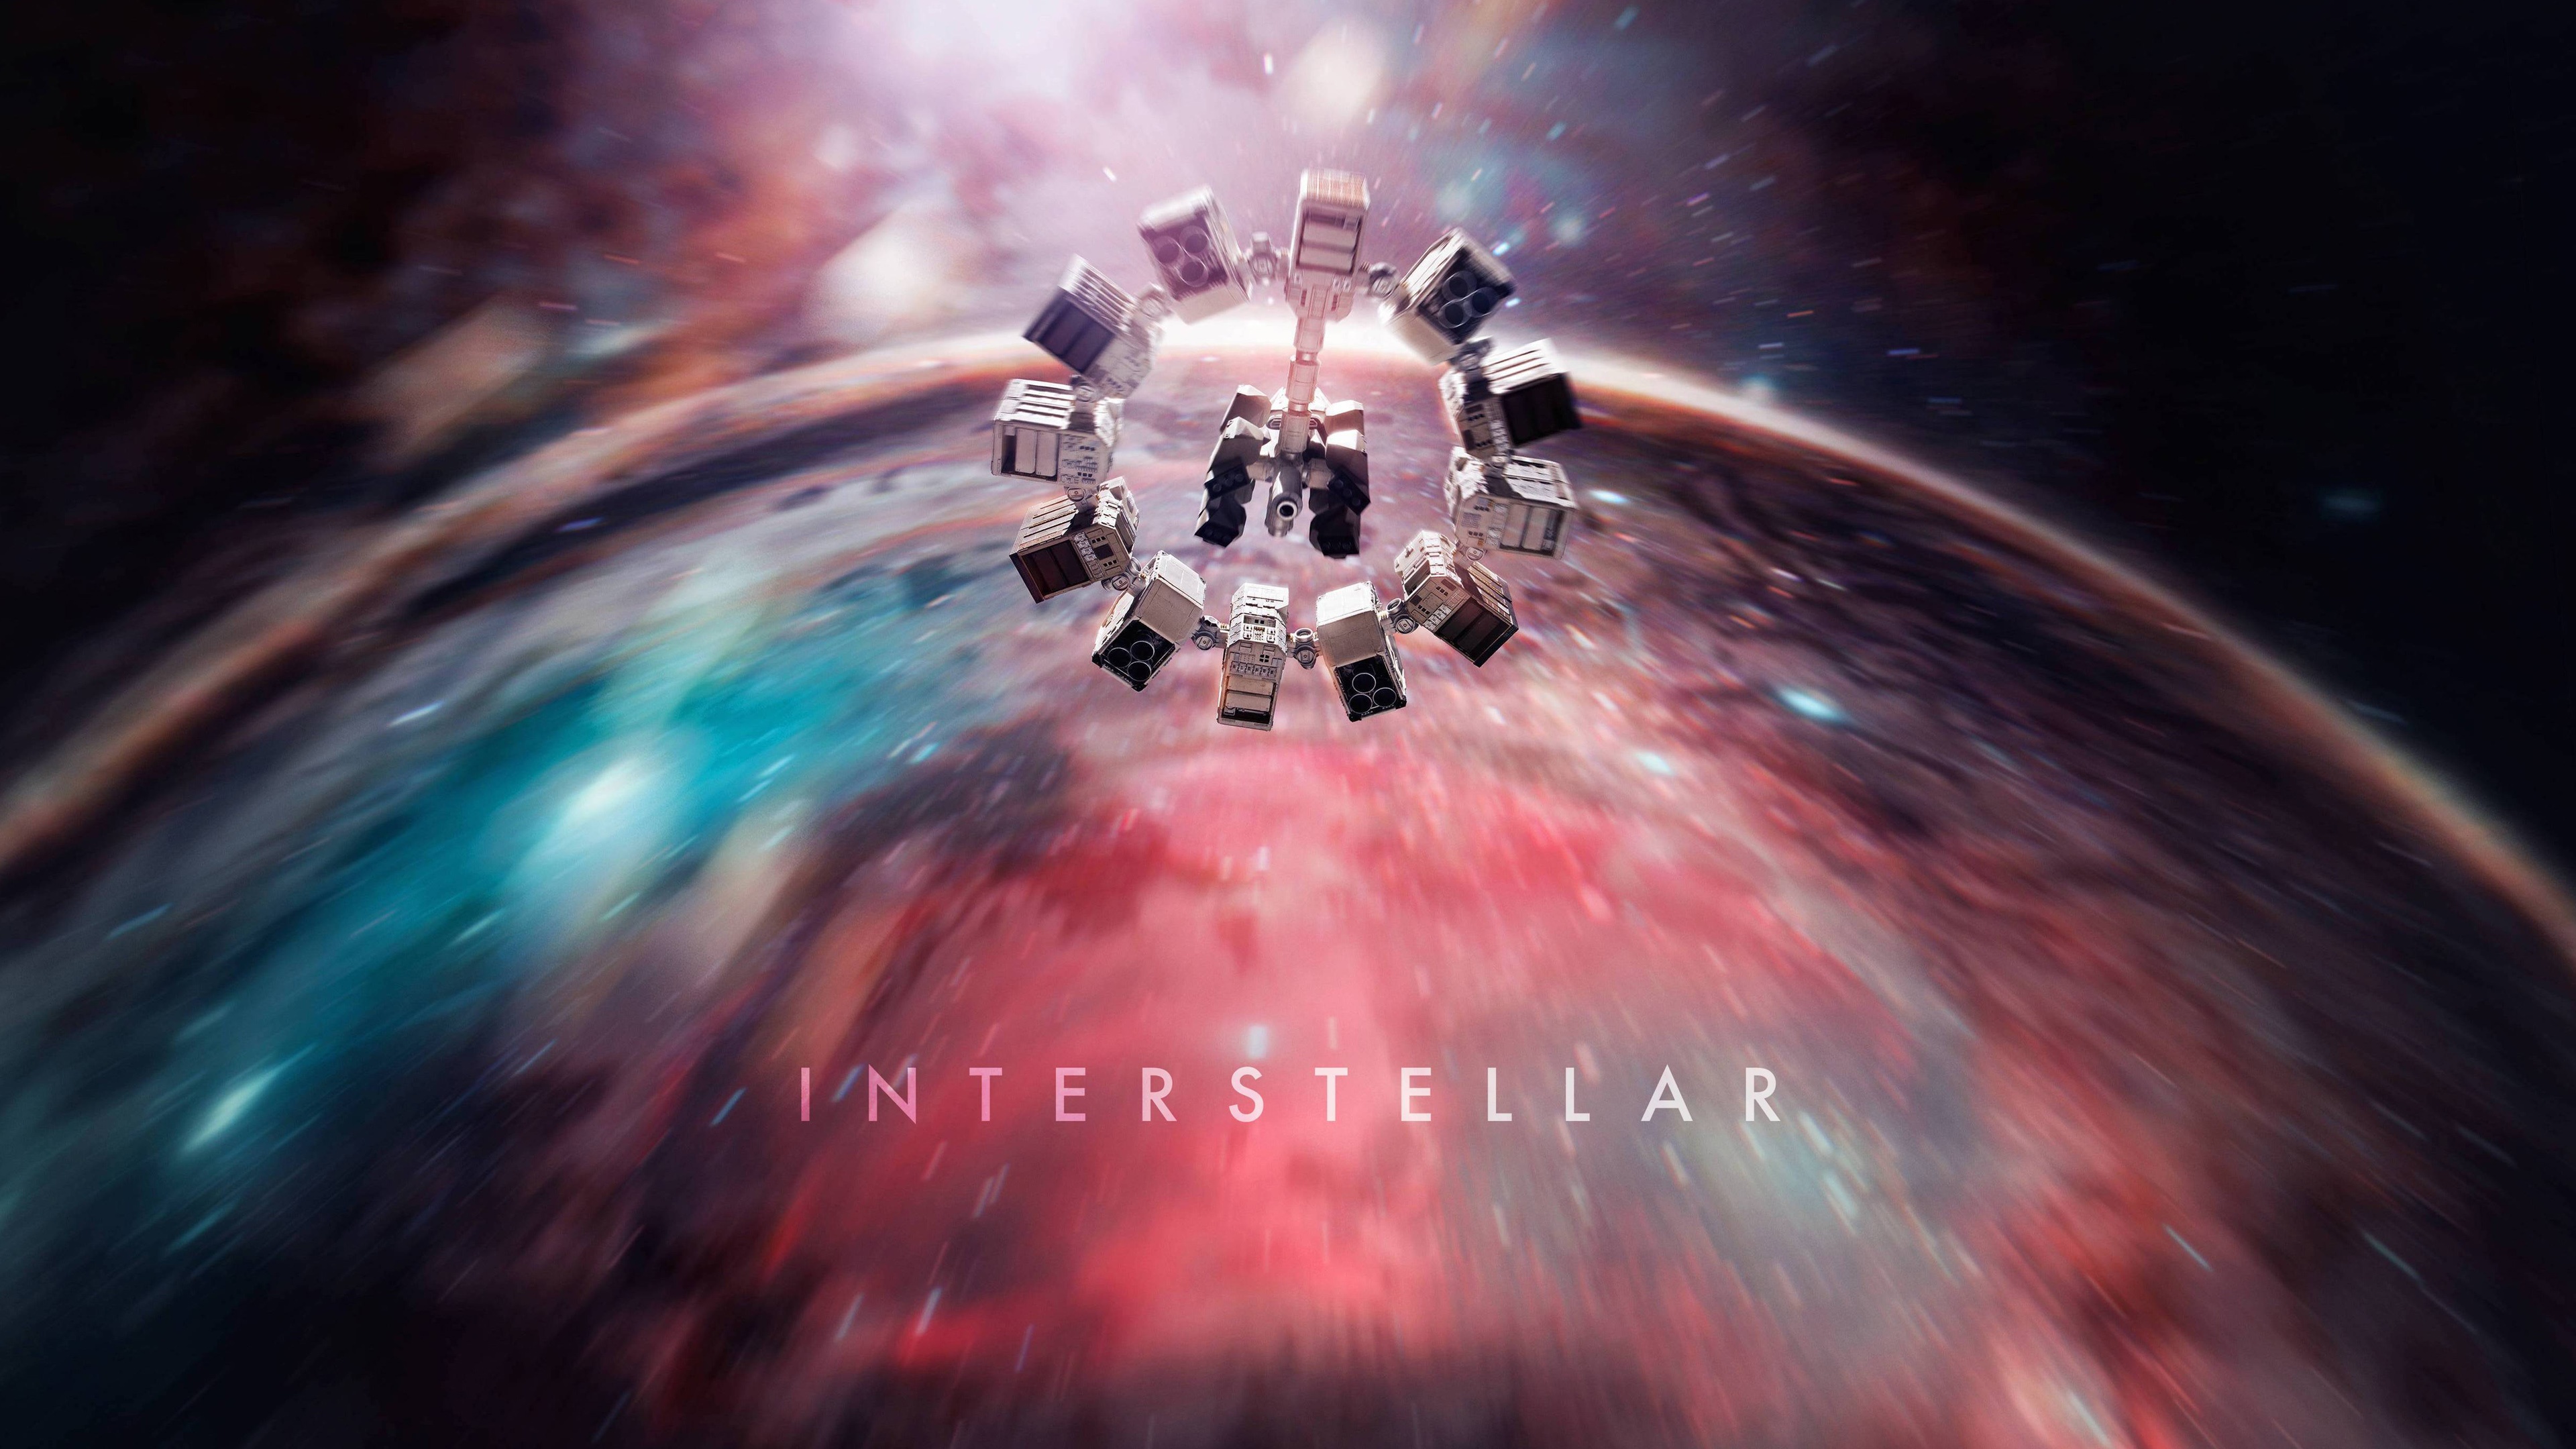 interstellar endurance 3840 x 216038